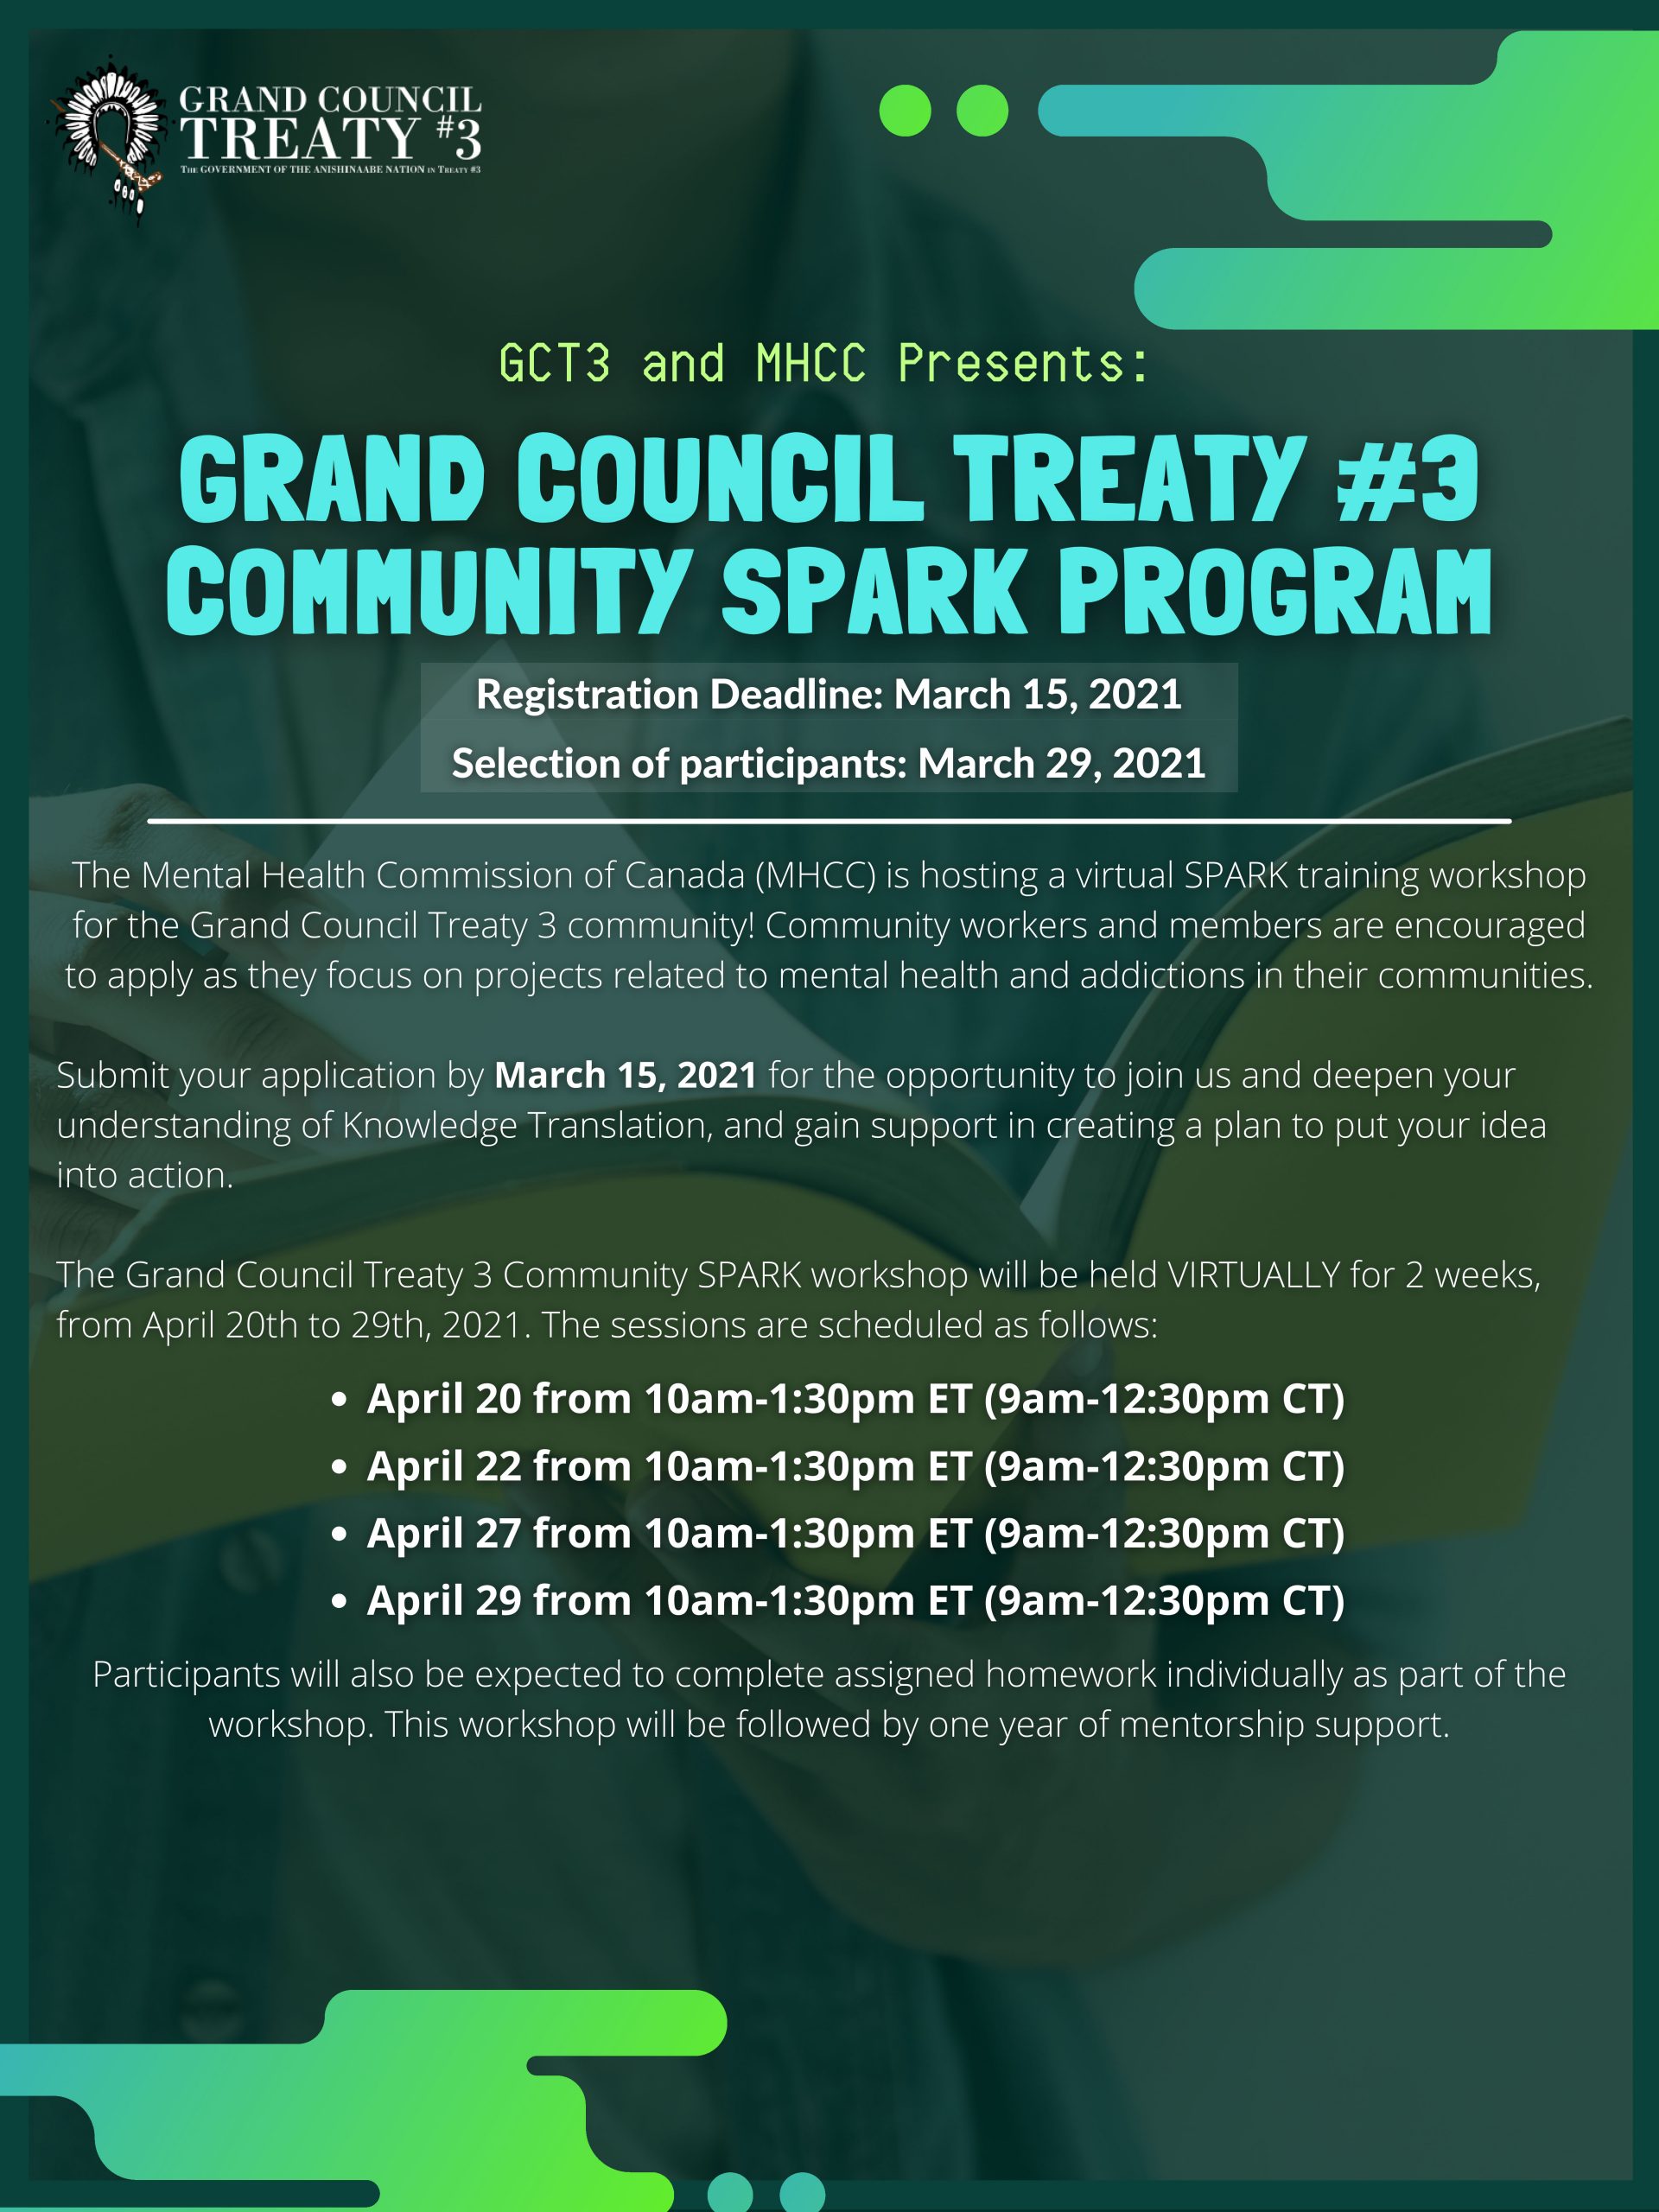 GCT#3 Community Spark Program